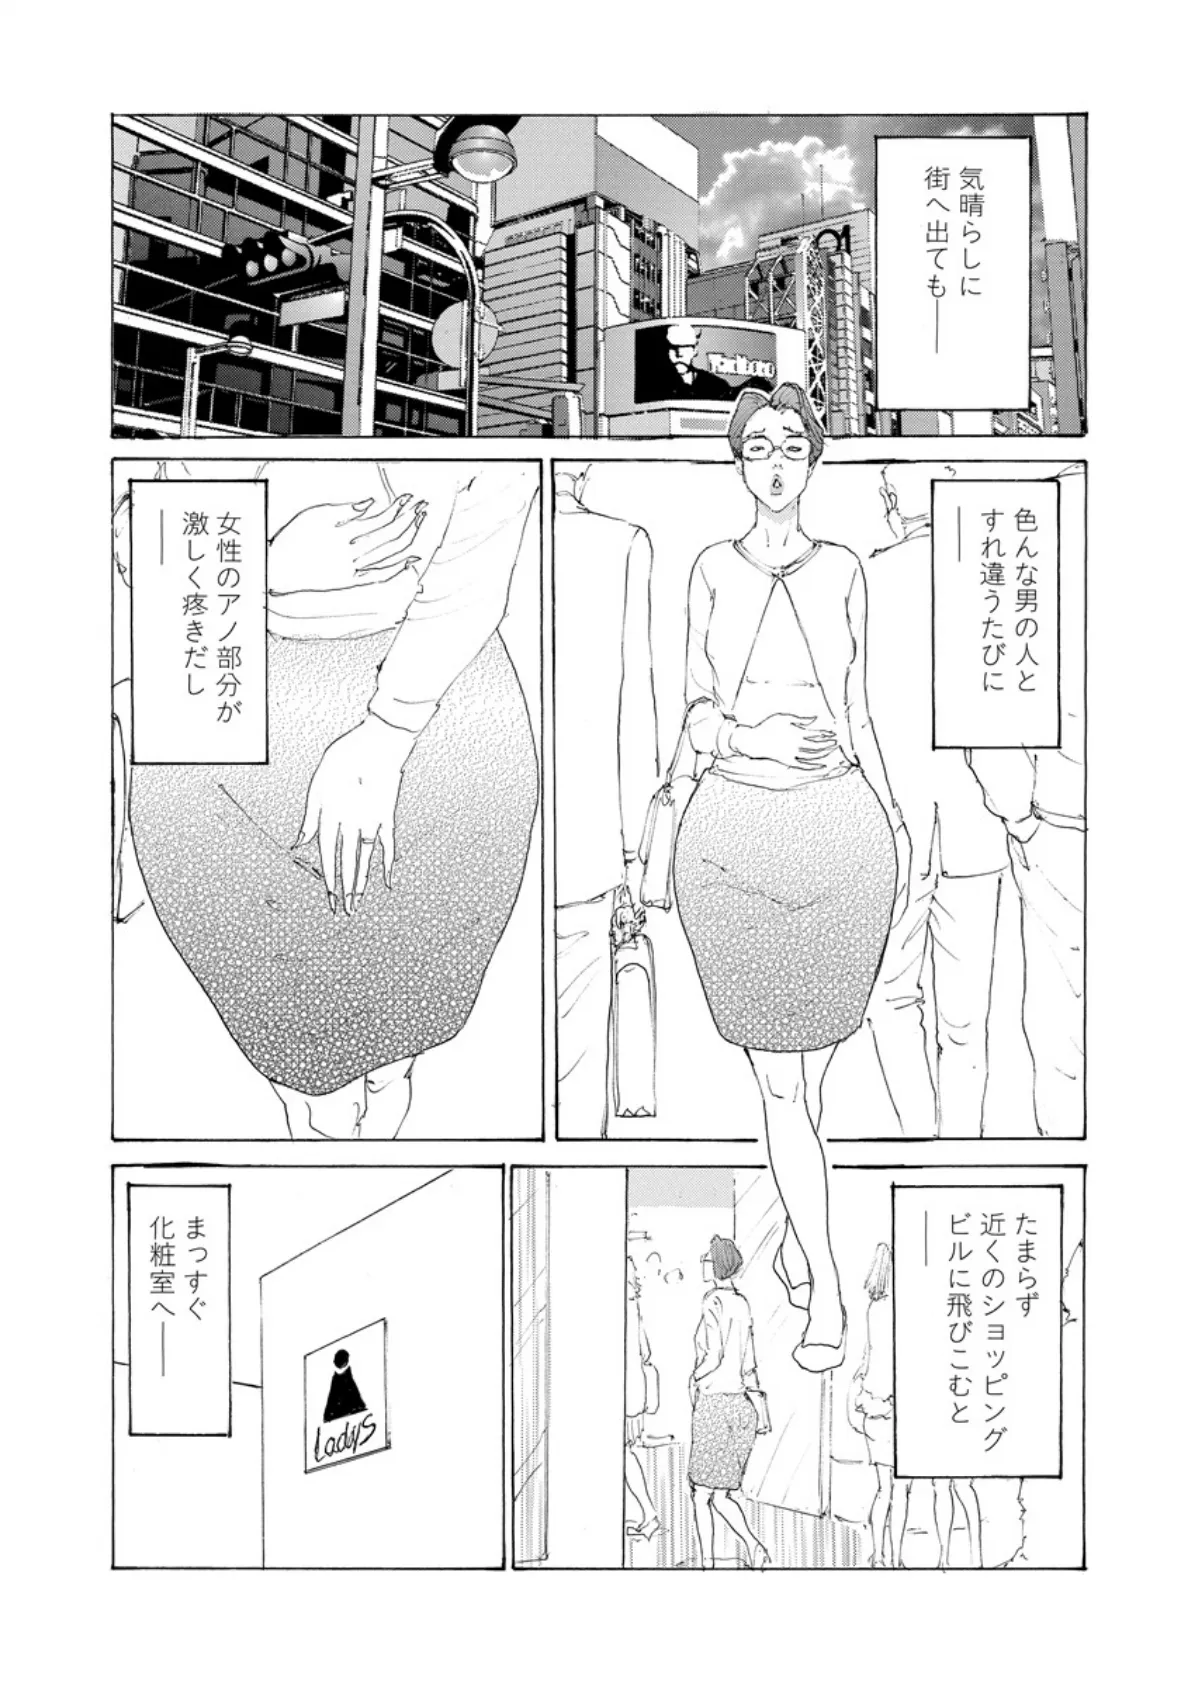 貞淑インモラル 4 7ページ